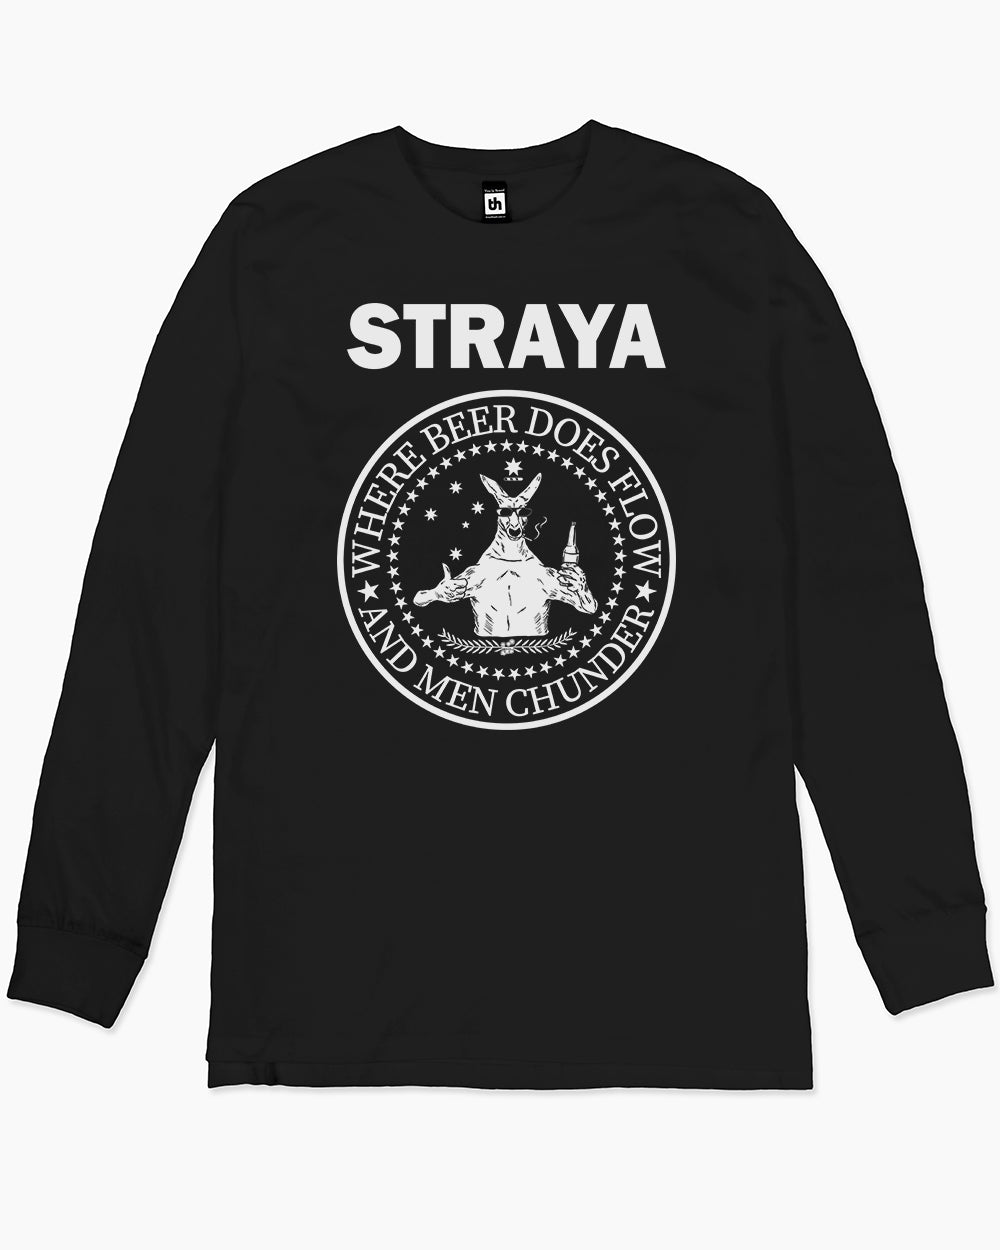 Straya - Where Beer Does Flow & Men Chunder Long Sleeve Australia Online #colour_black